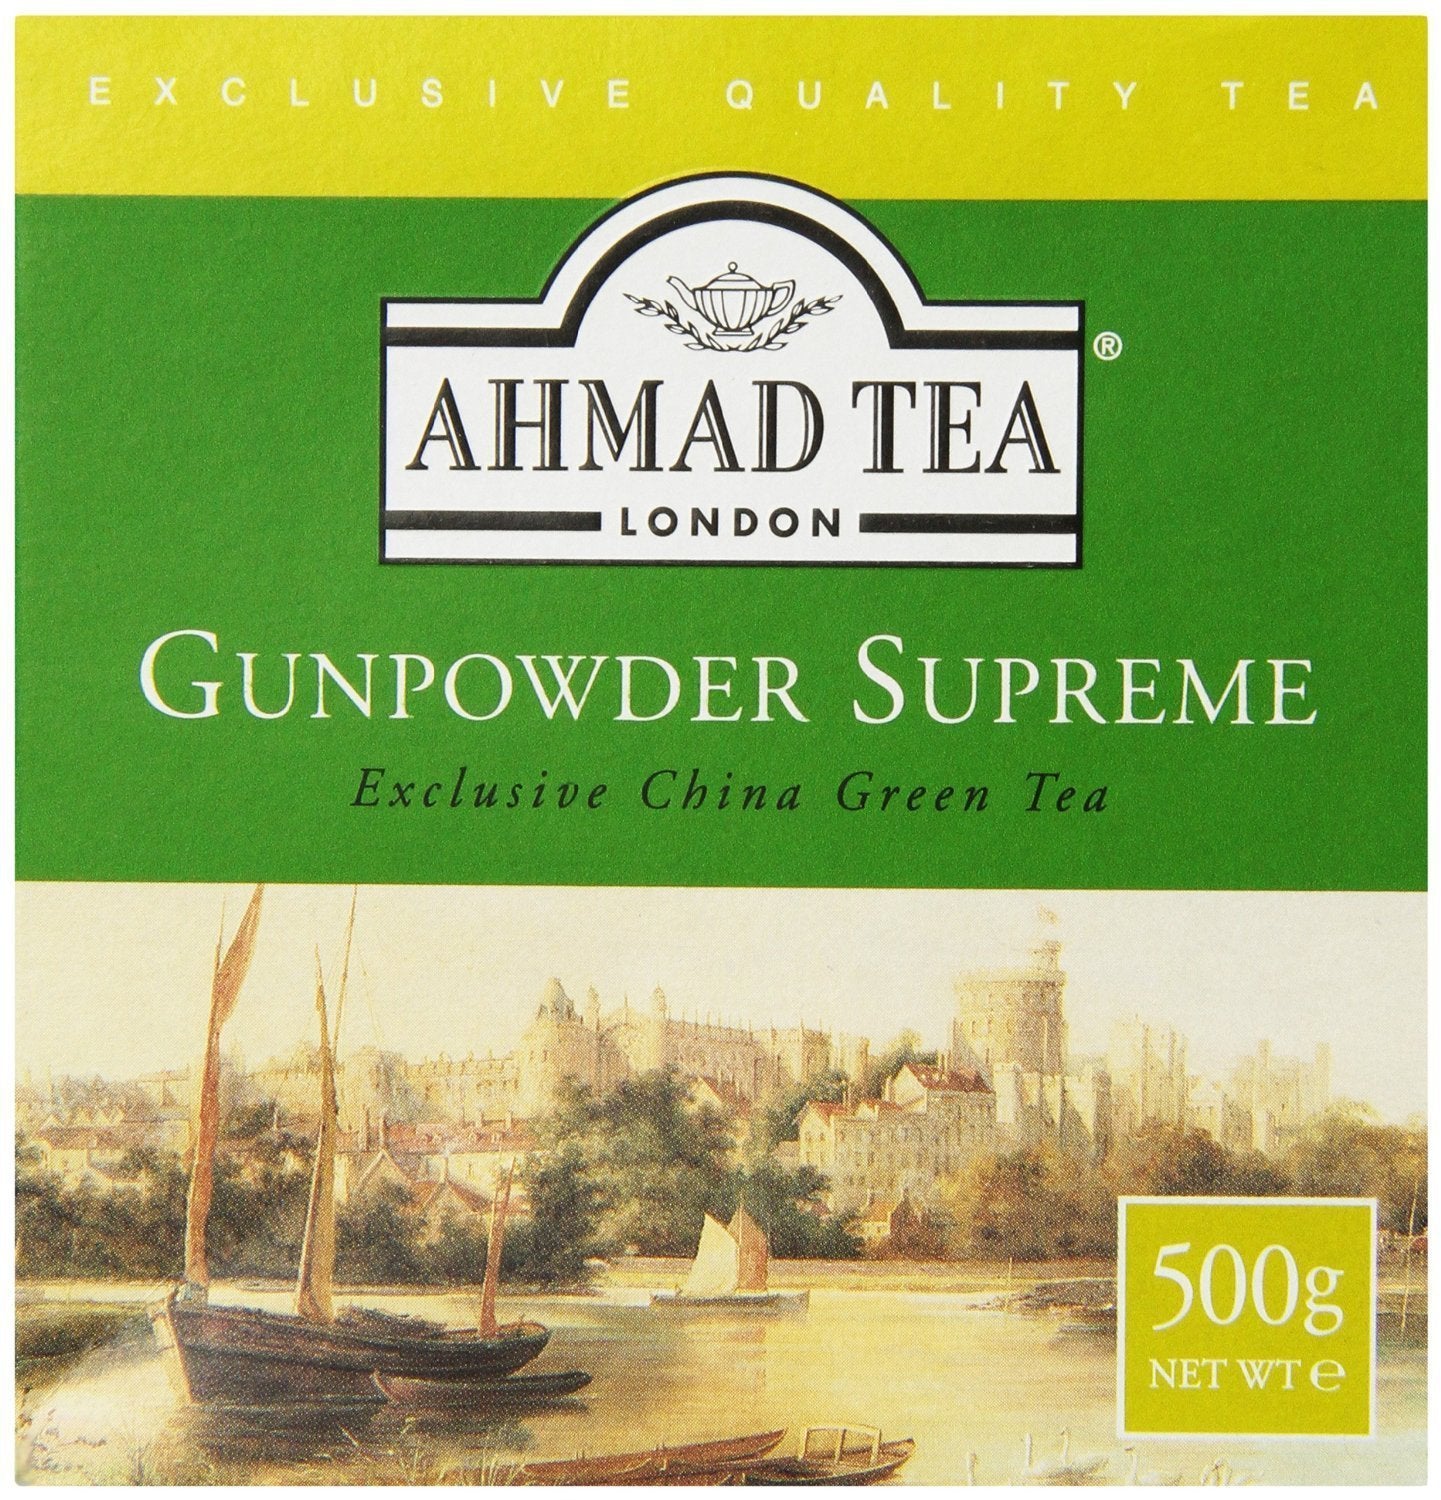 Ahmad Tea 500g Loose Leaf Cardamom Tea